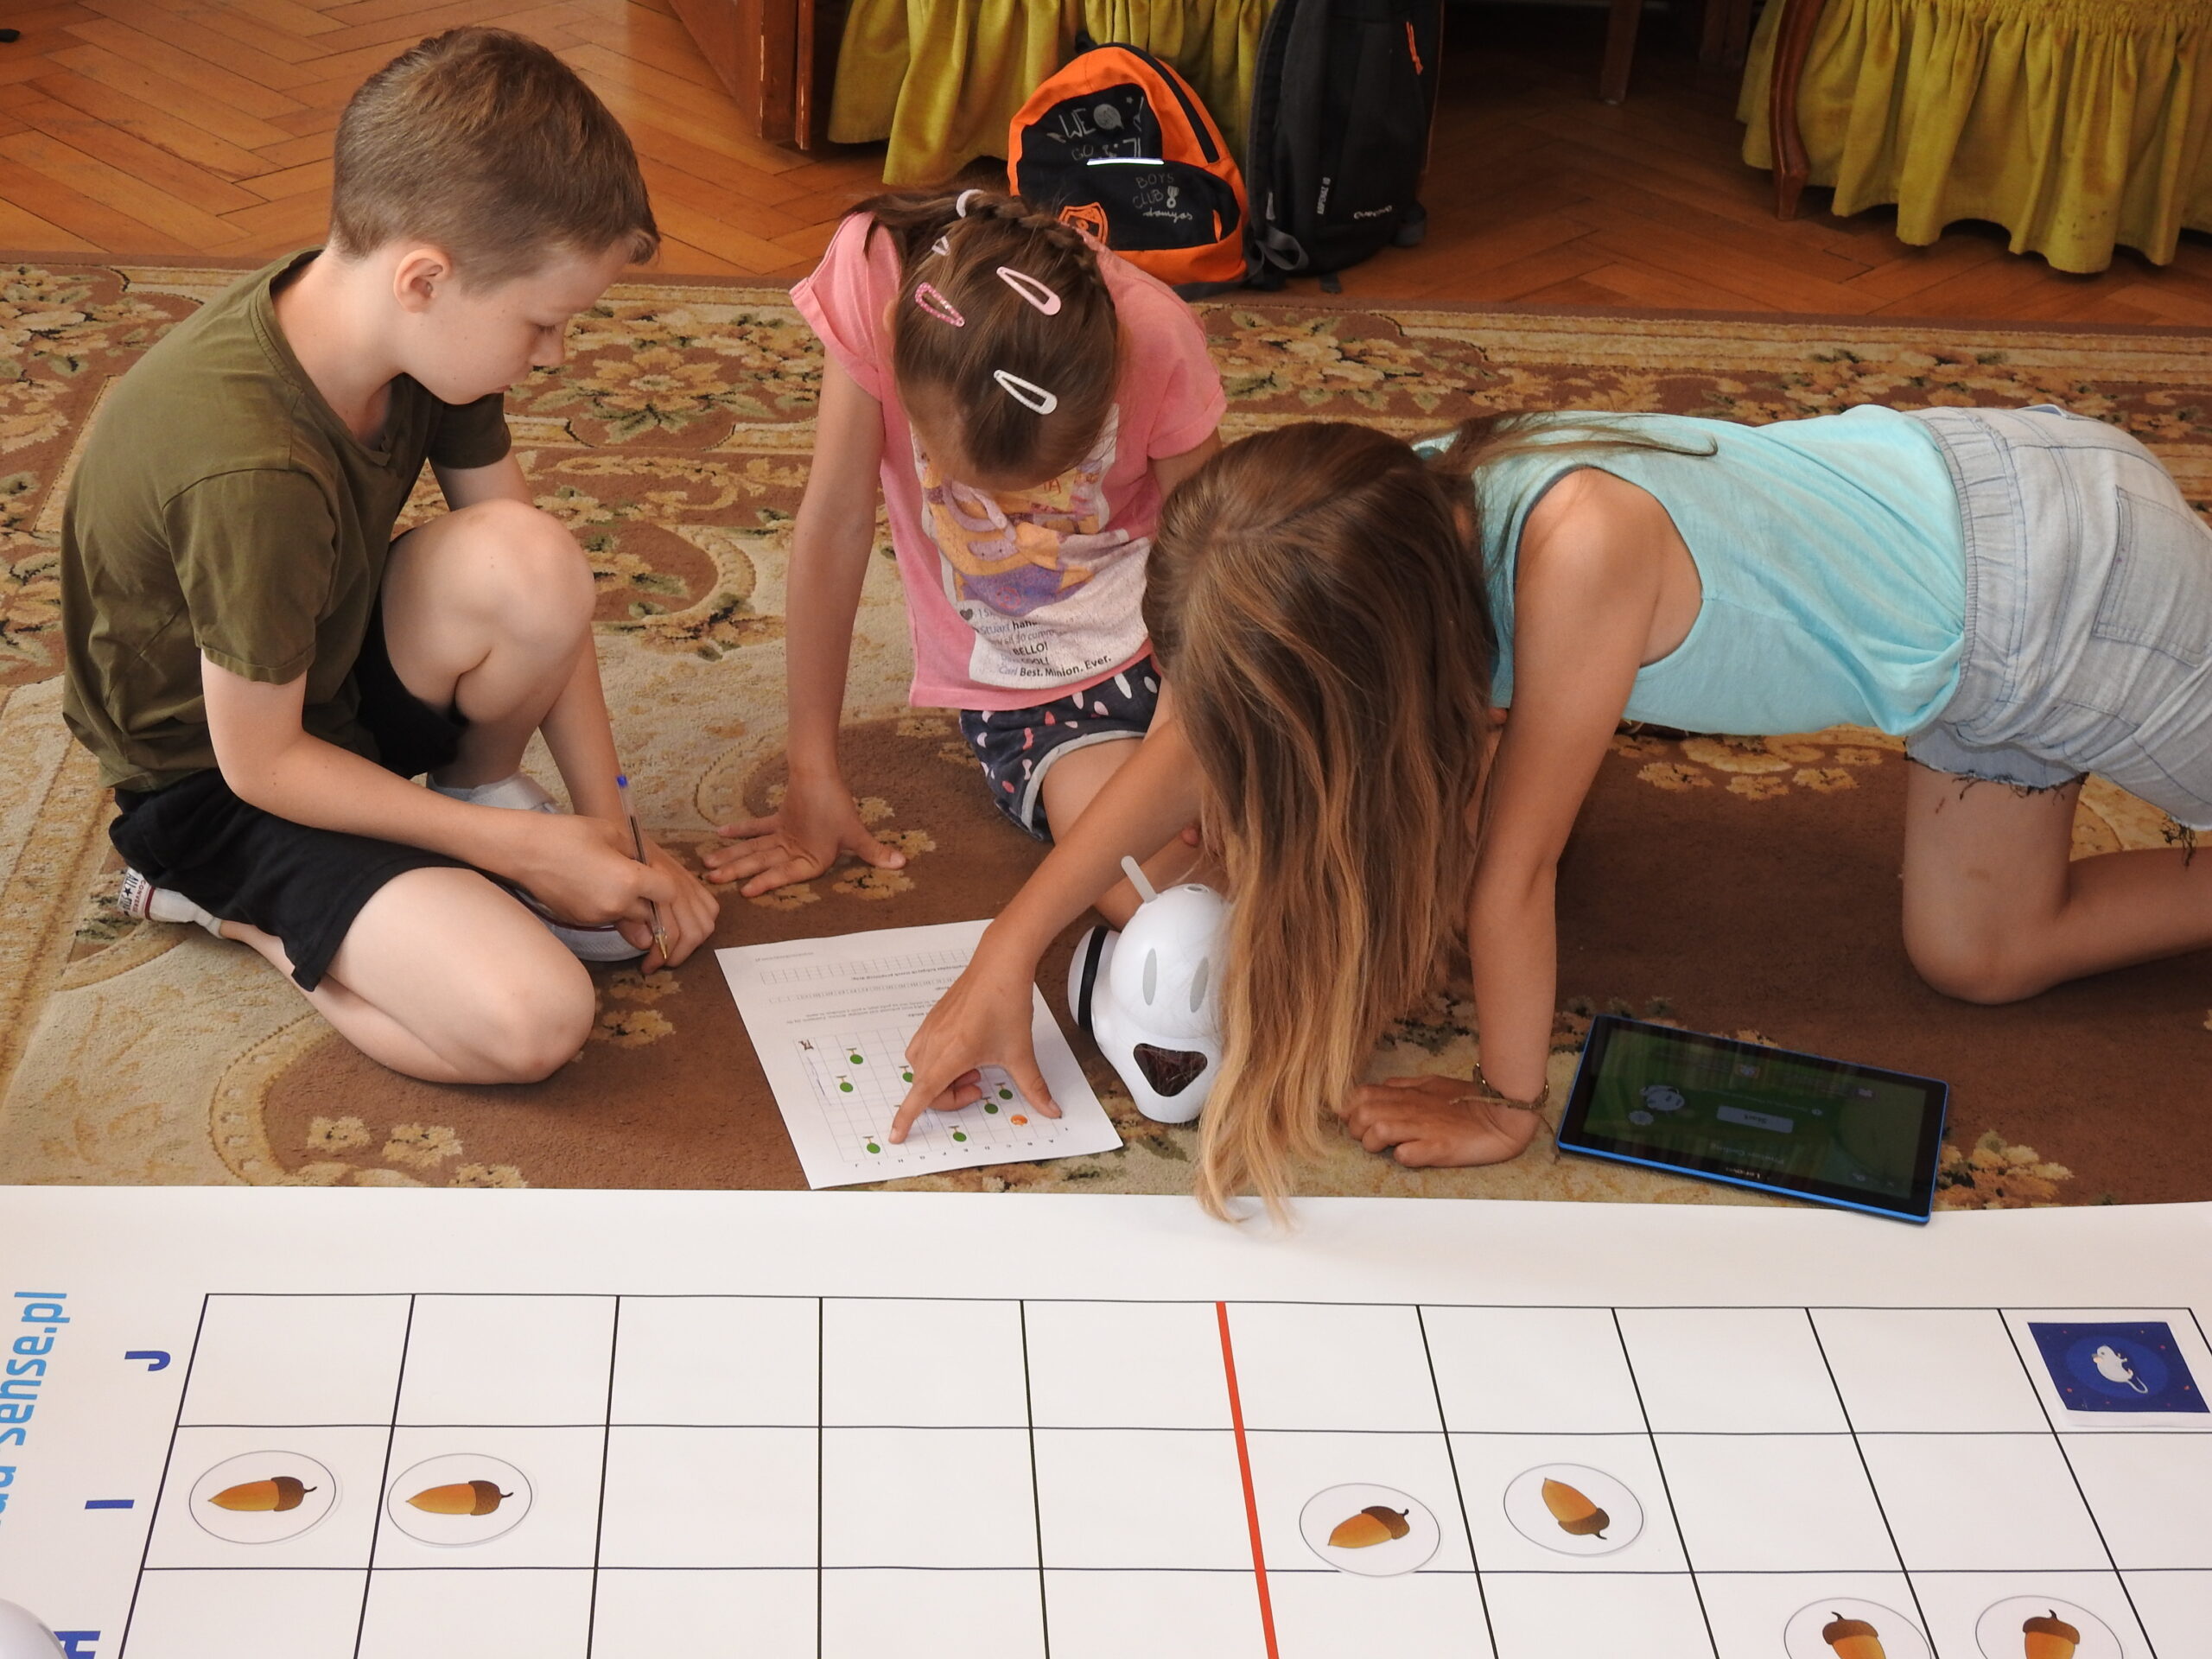 Troje dzieci siedzi lub klęczy na dywanie i jest pochylonych nad kartką A4 z nadrukowaną instrukcją do kodowania. Na kartce widać planszę podzieloną na kwadraty. W kilku kwadratach znajdują się zielone i żółte kółeczka. Jedno dziecko trzyma rękę na kartce wskazując palcami określone kwadraty. Obok dzieci znajduje się biały robot do kodowania oraz tablet. Widać też fragment maty do kodowania.